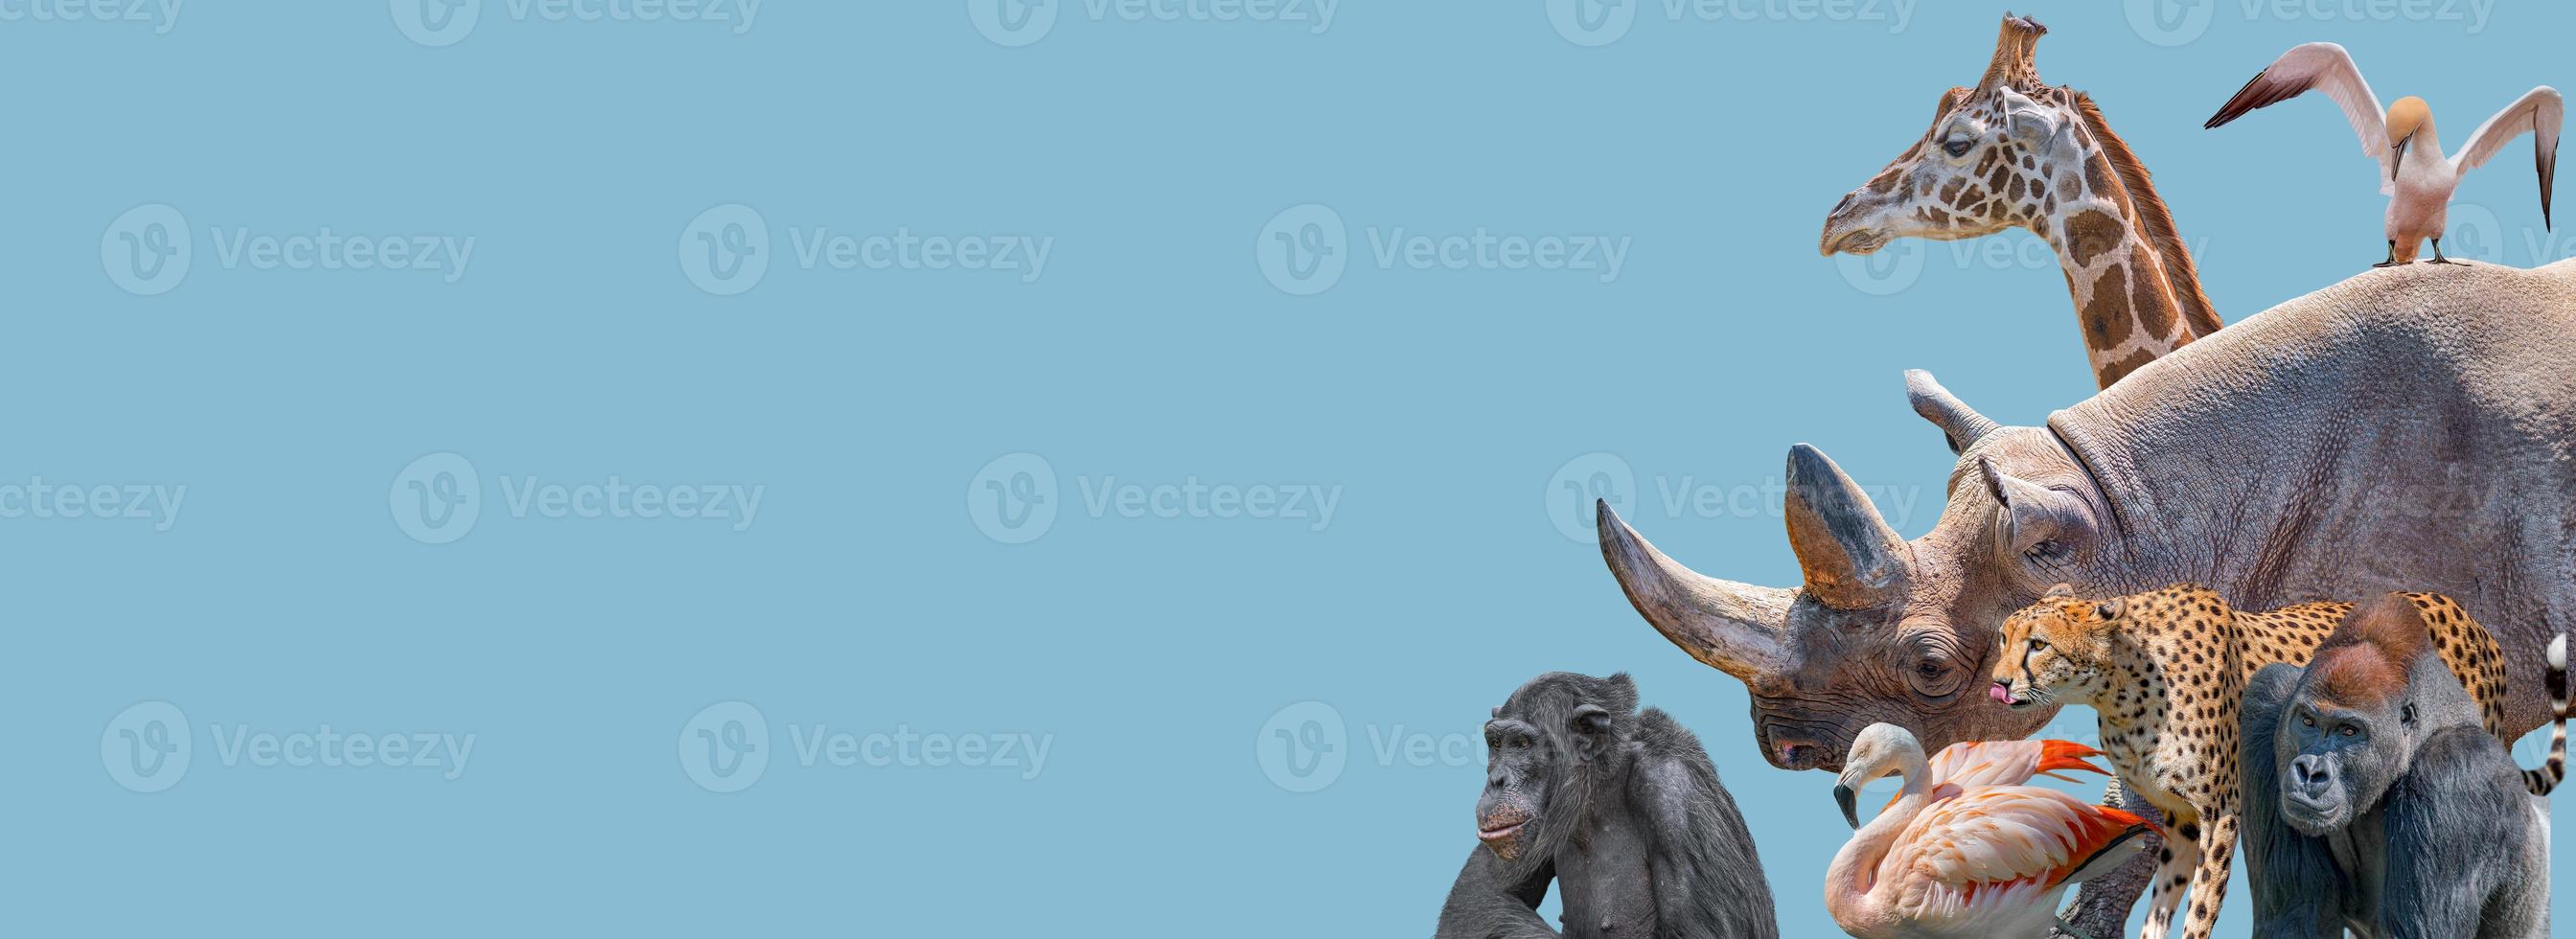 bannière avec des animaux sauvages vulnérables en afrique, rhinocéros, guépard, gorille, girafe, éléphant, flamant rose, chimpanzé sur fond bleu ciel uni avec espace de copie. concept biodiversité et conservation. photo